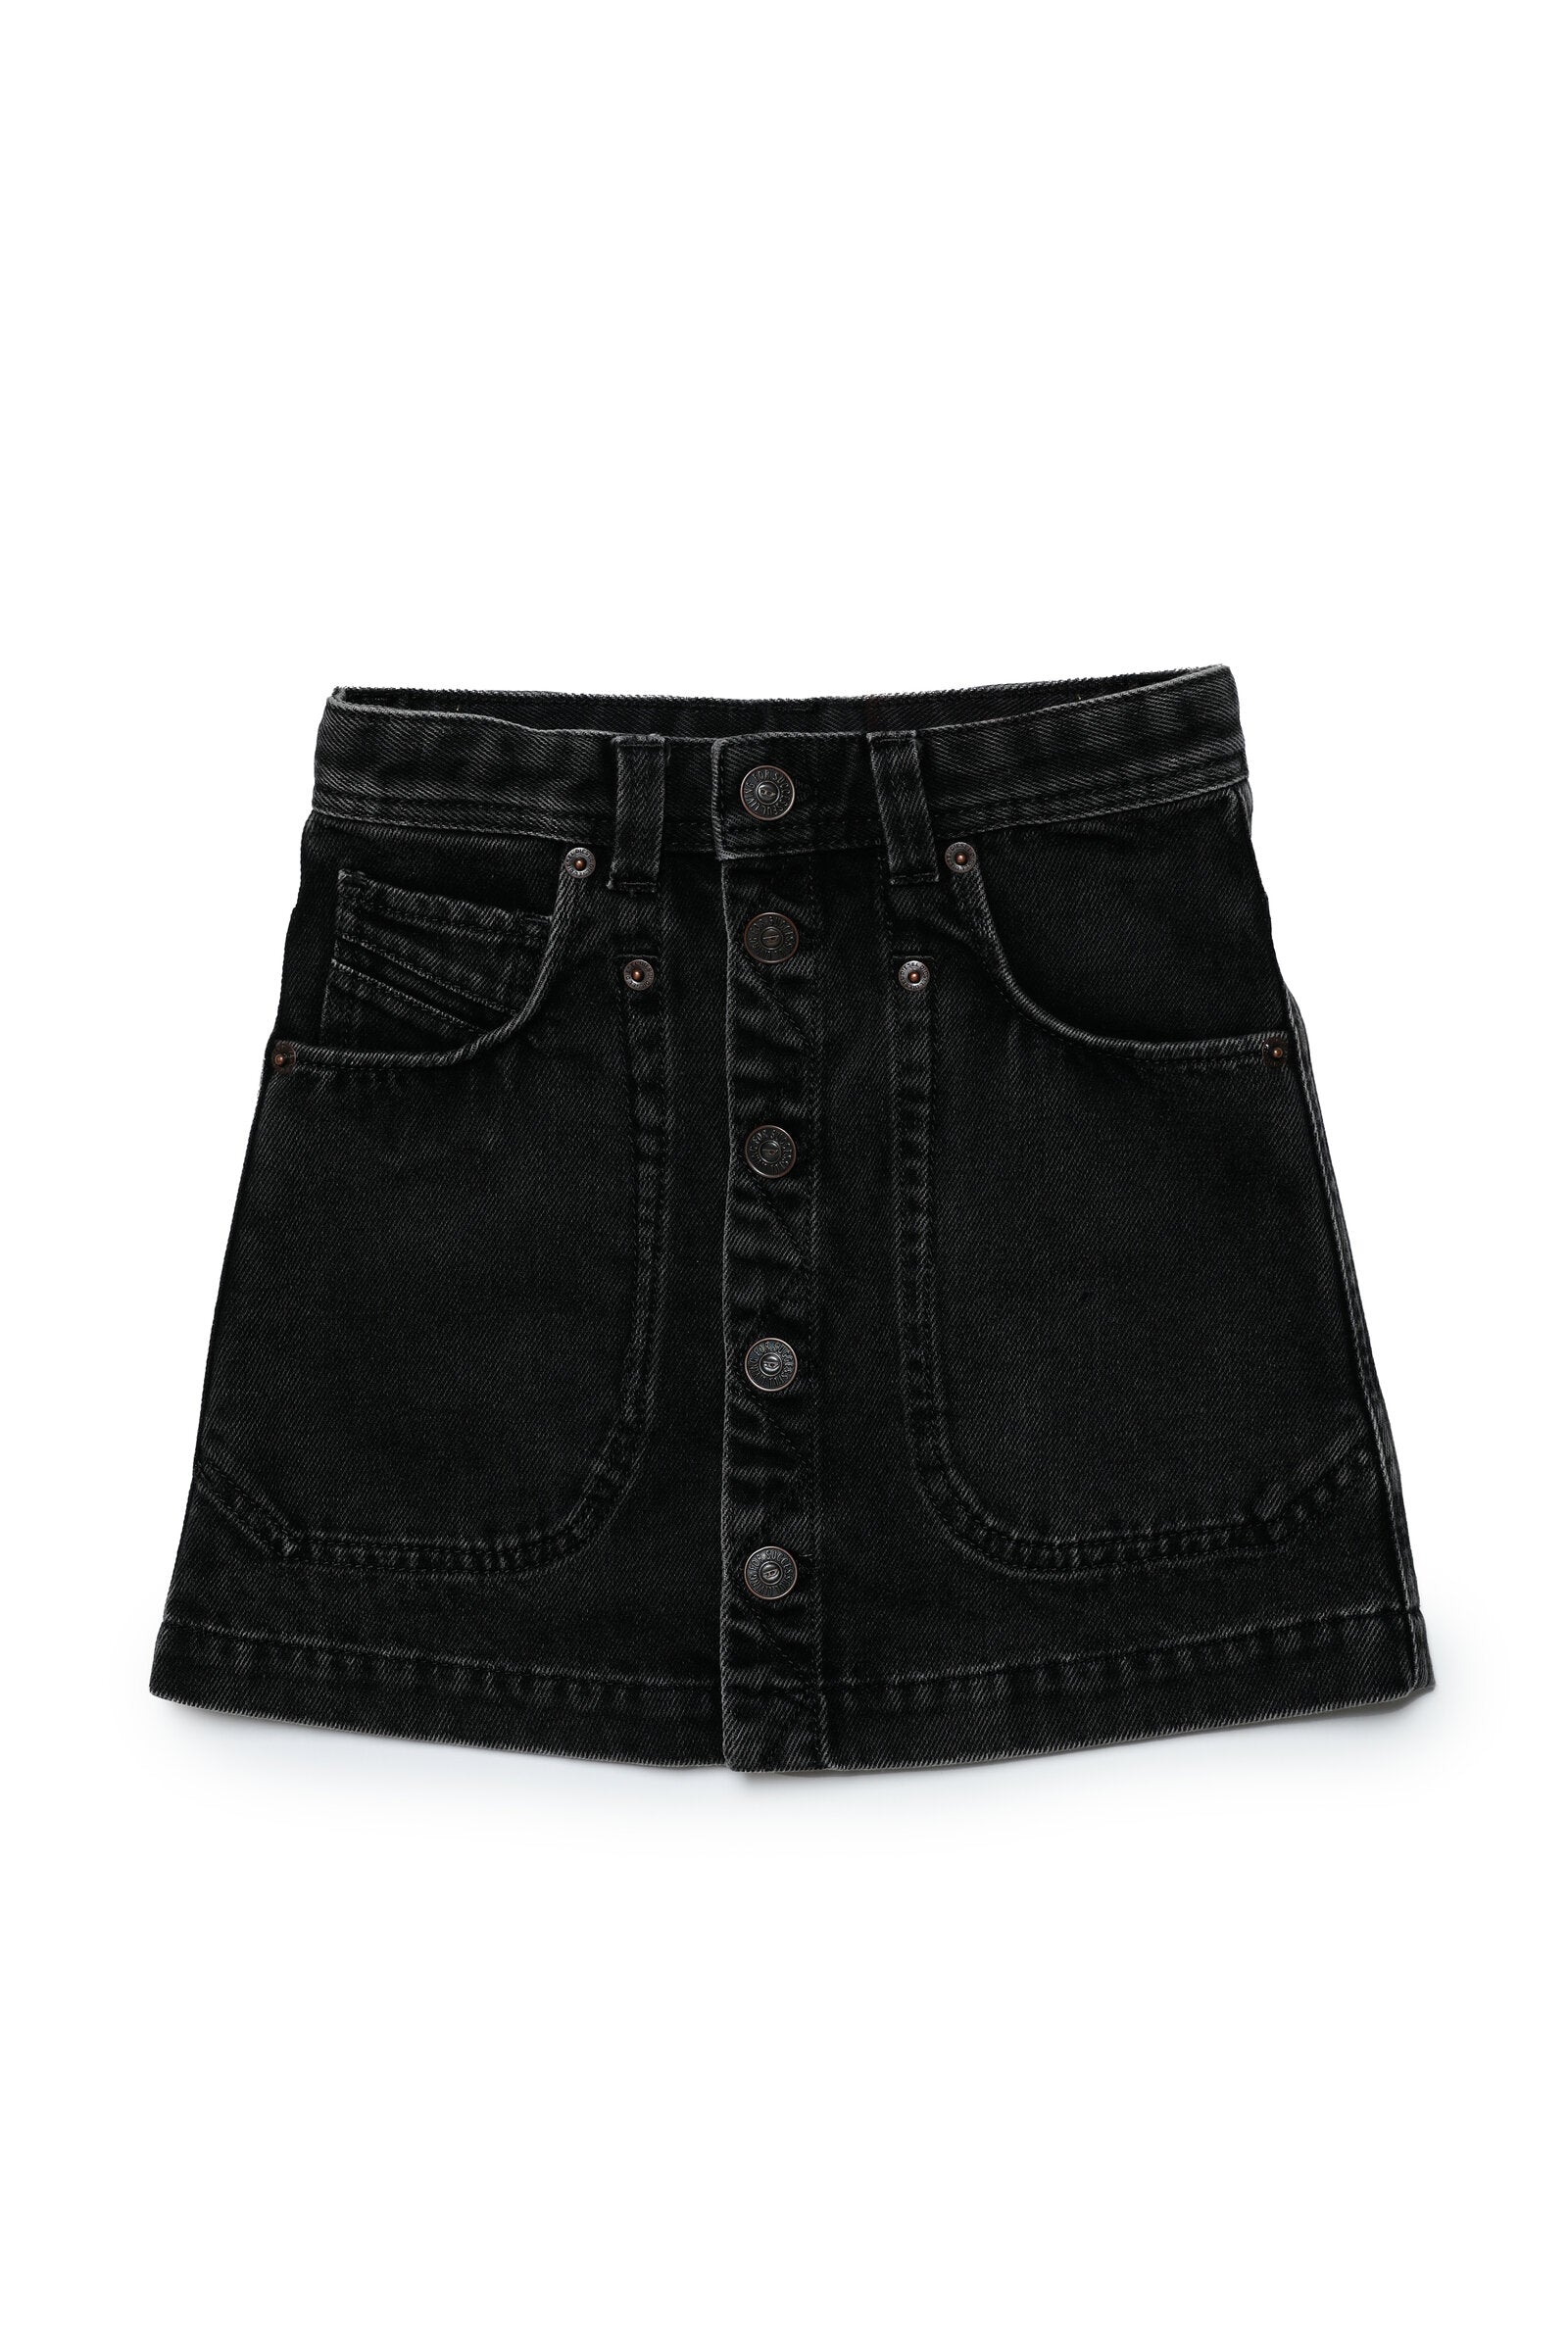 Black Washed Denim Mini Skirt with Chunky Belt - Y2K Grunge | Minga London  – Minga London US